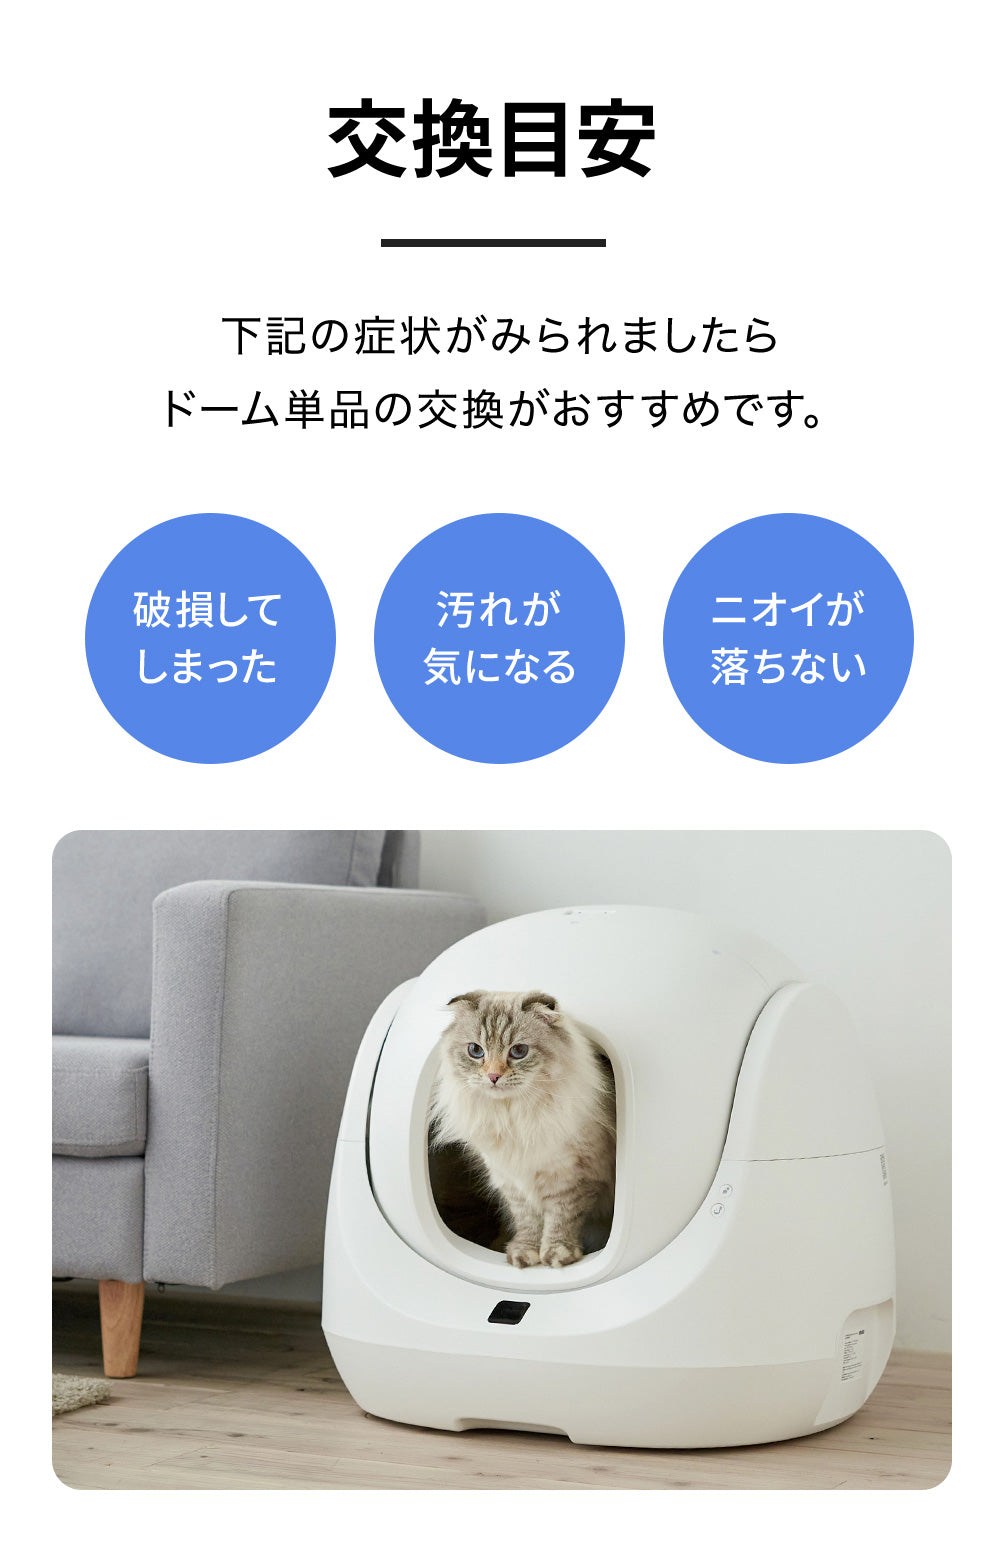  [自動猫トイレ CATLINK SCOOPER SE専用ドーム] 猫 ねこ ネコ 自動ネコトイレ 自動トイレ 猫トイレ 大きめ 自動 シニア キャットリンク スマホ不要 簡単 シンプル おすすめ おしゃれ アプリ 掃除